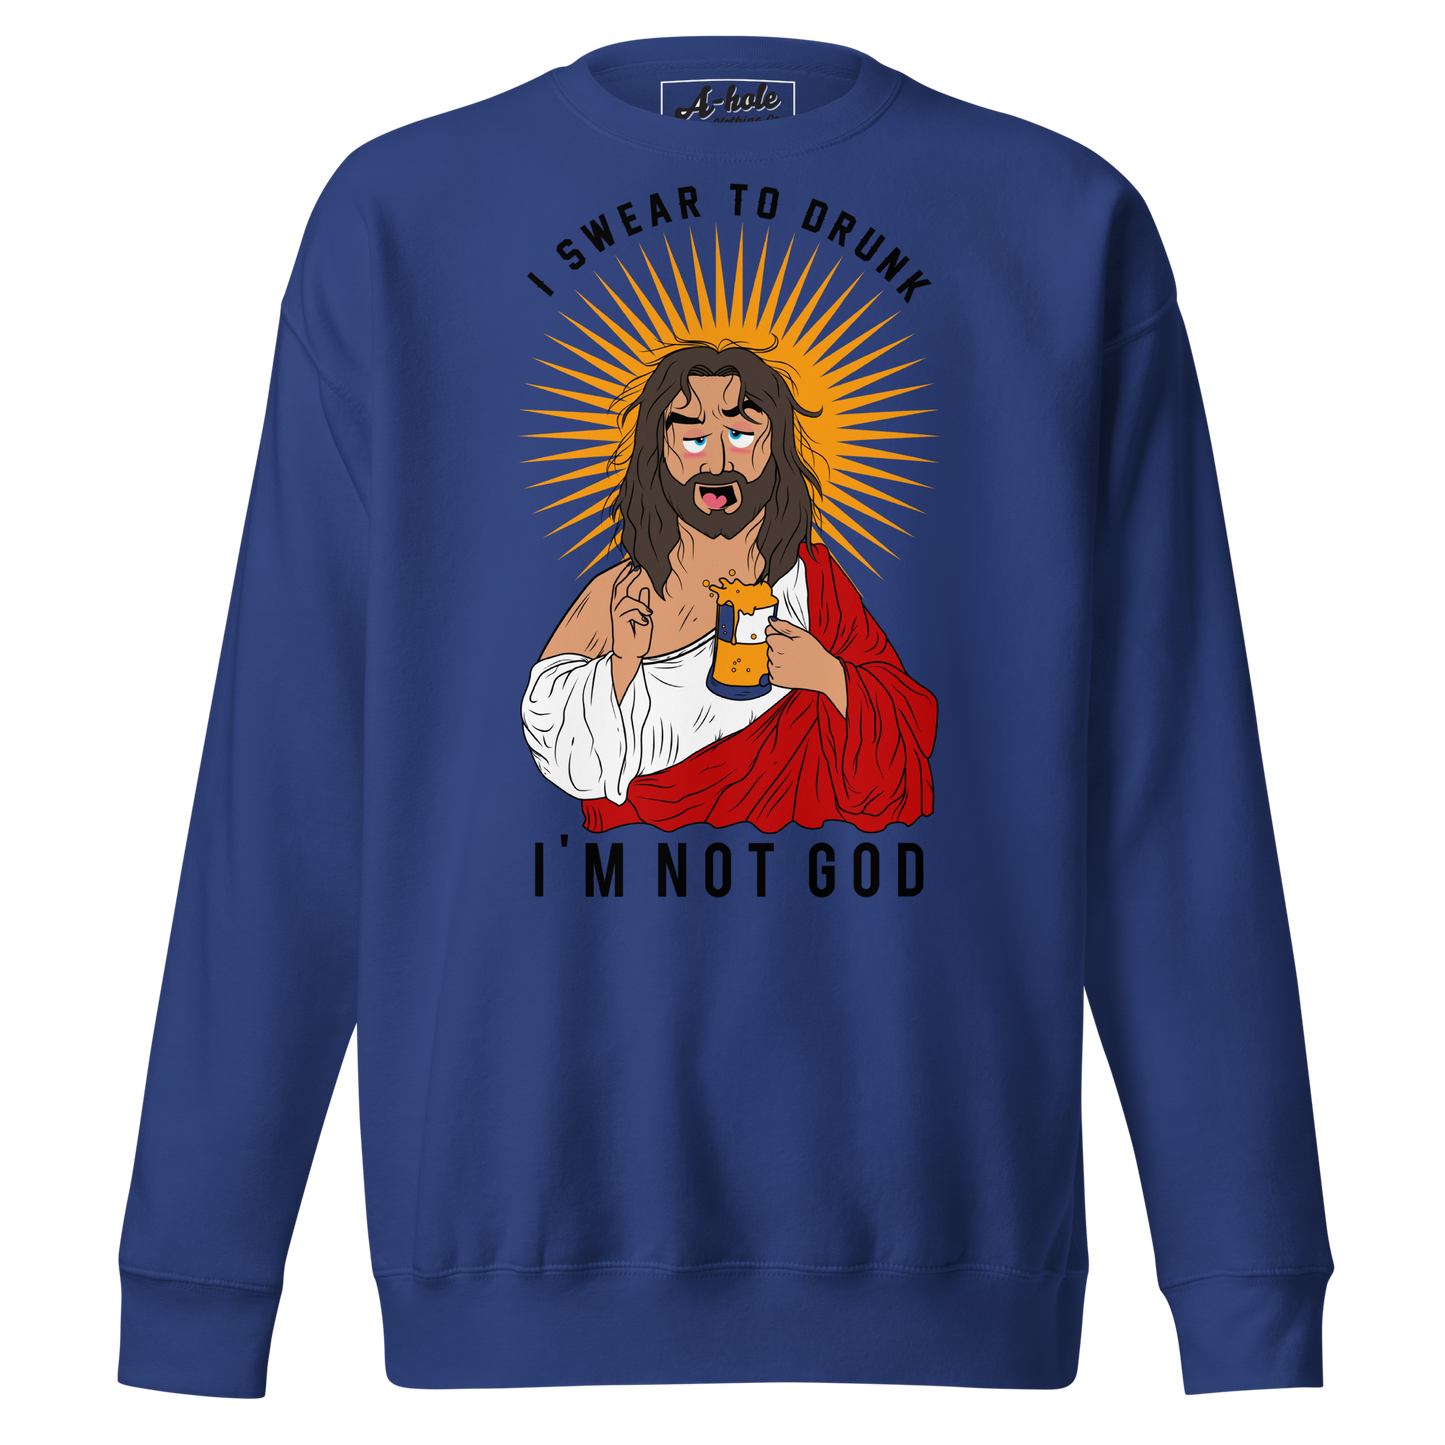 A-Hole "Drunk Jesus" Unisex Premium Sweatshirt